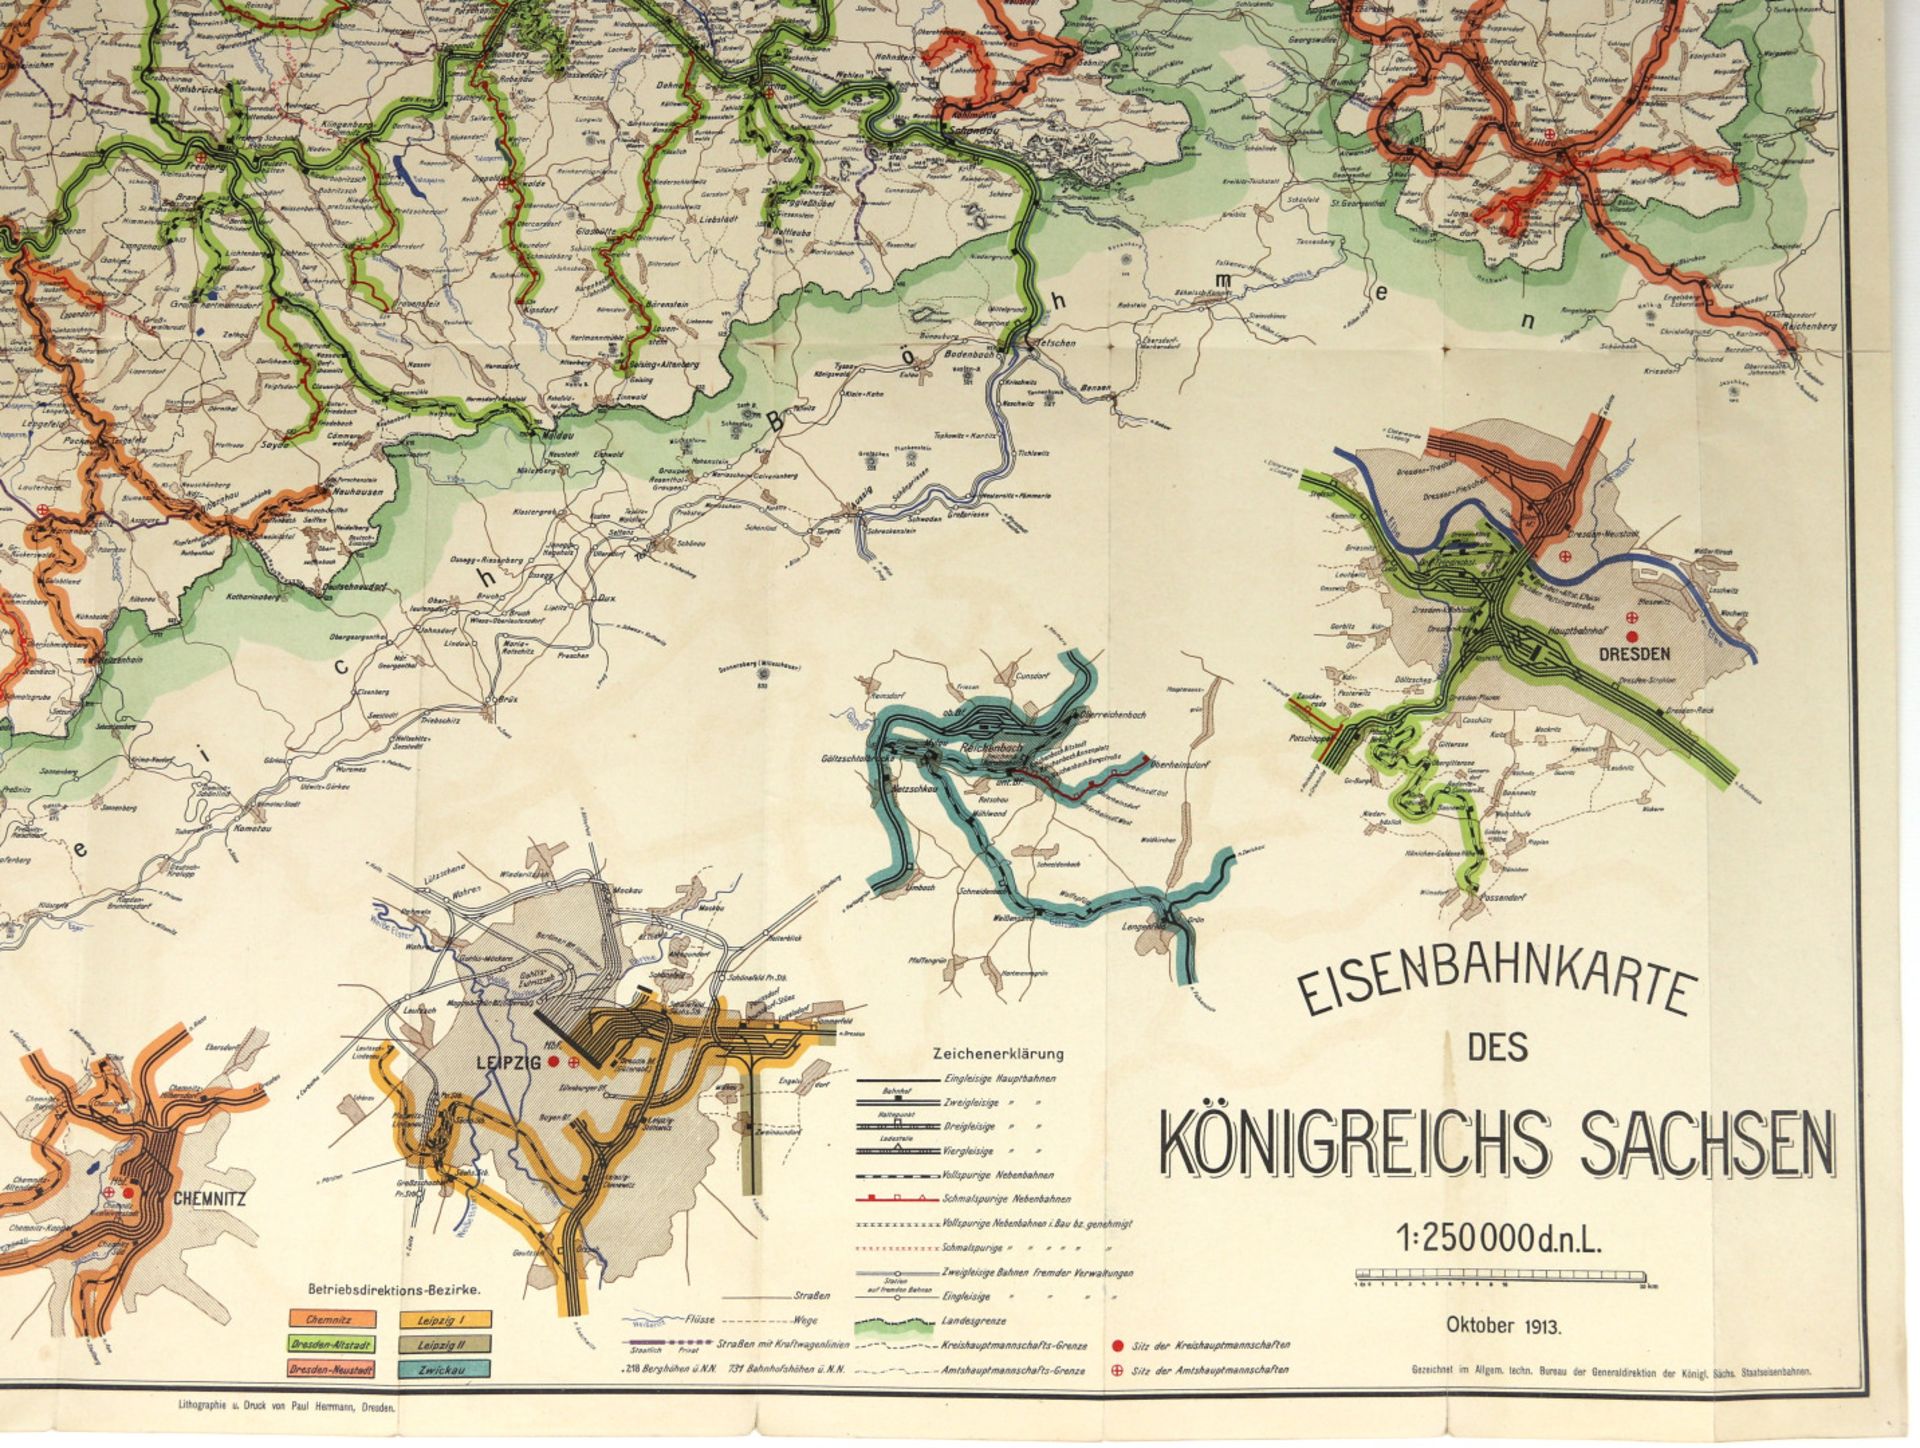 Eisenbahnkarte des Königreichs Sachsen.